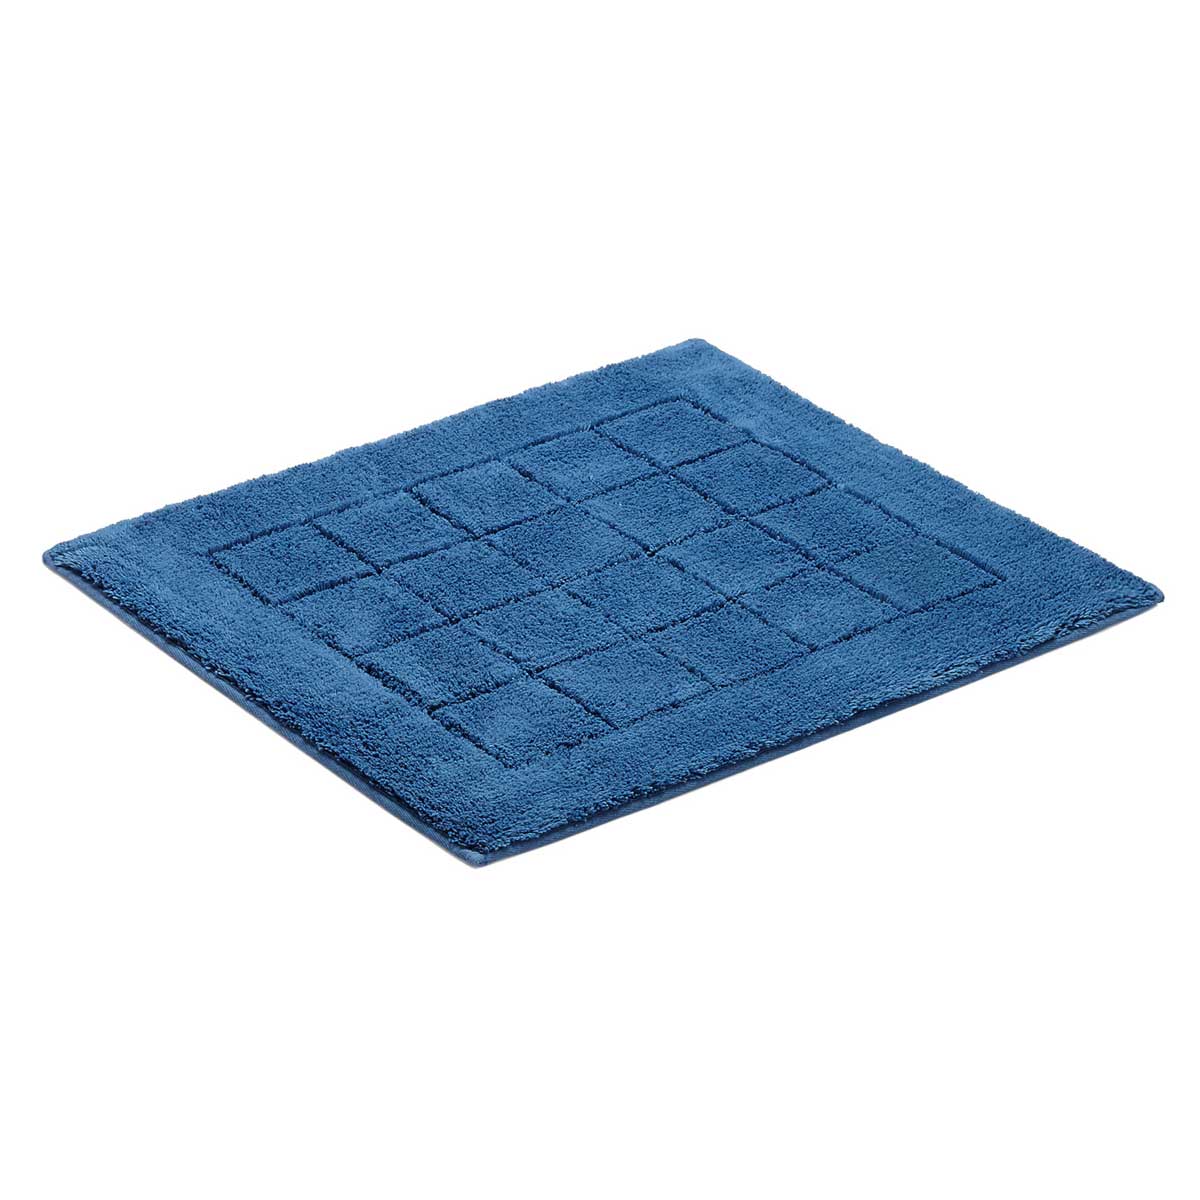 Коврик для ванной комнаты Vossen Exclusive 55x65см, синий коврик для ванной комнаты carl серый 60 90 ridder